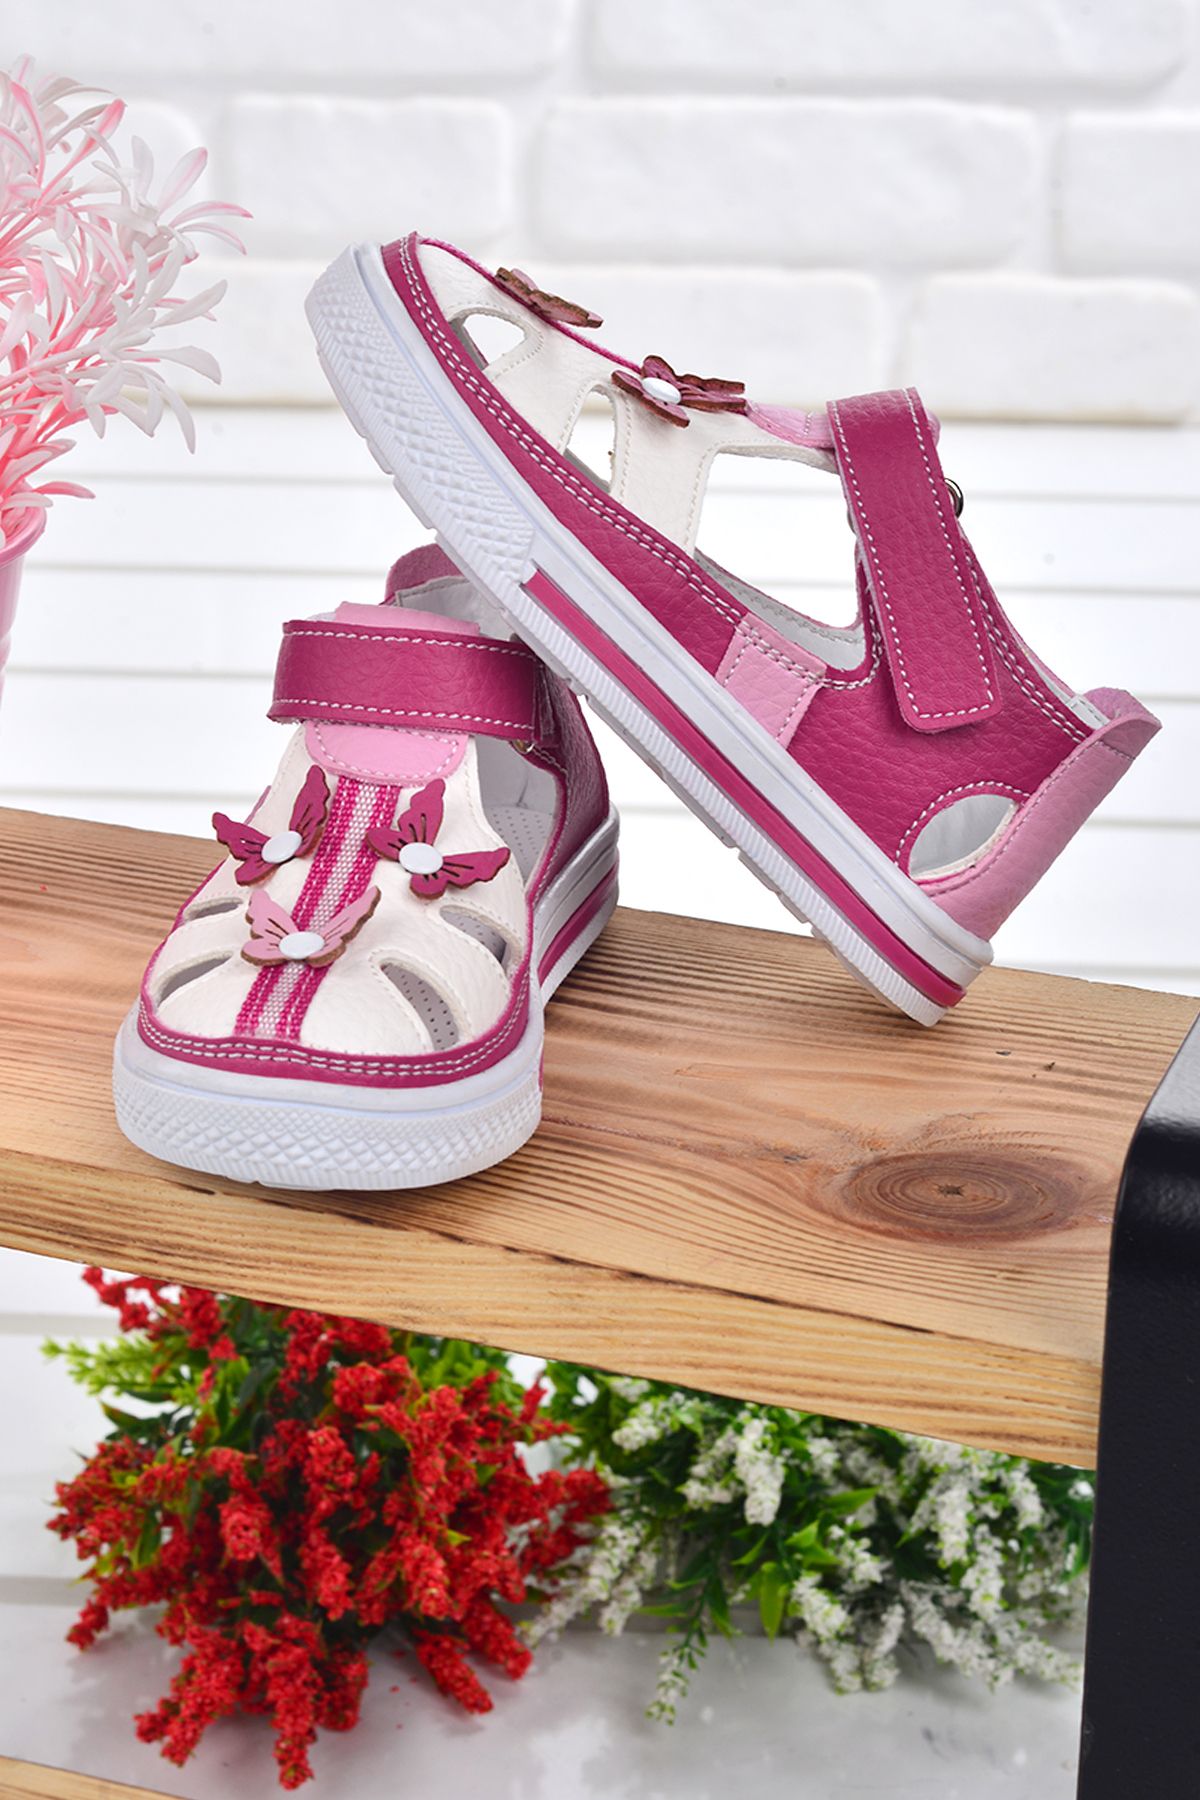 Kiko Kids 2217-22 Ortopedik Kız Çocuk Bebe Ayakkabı Sandalet